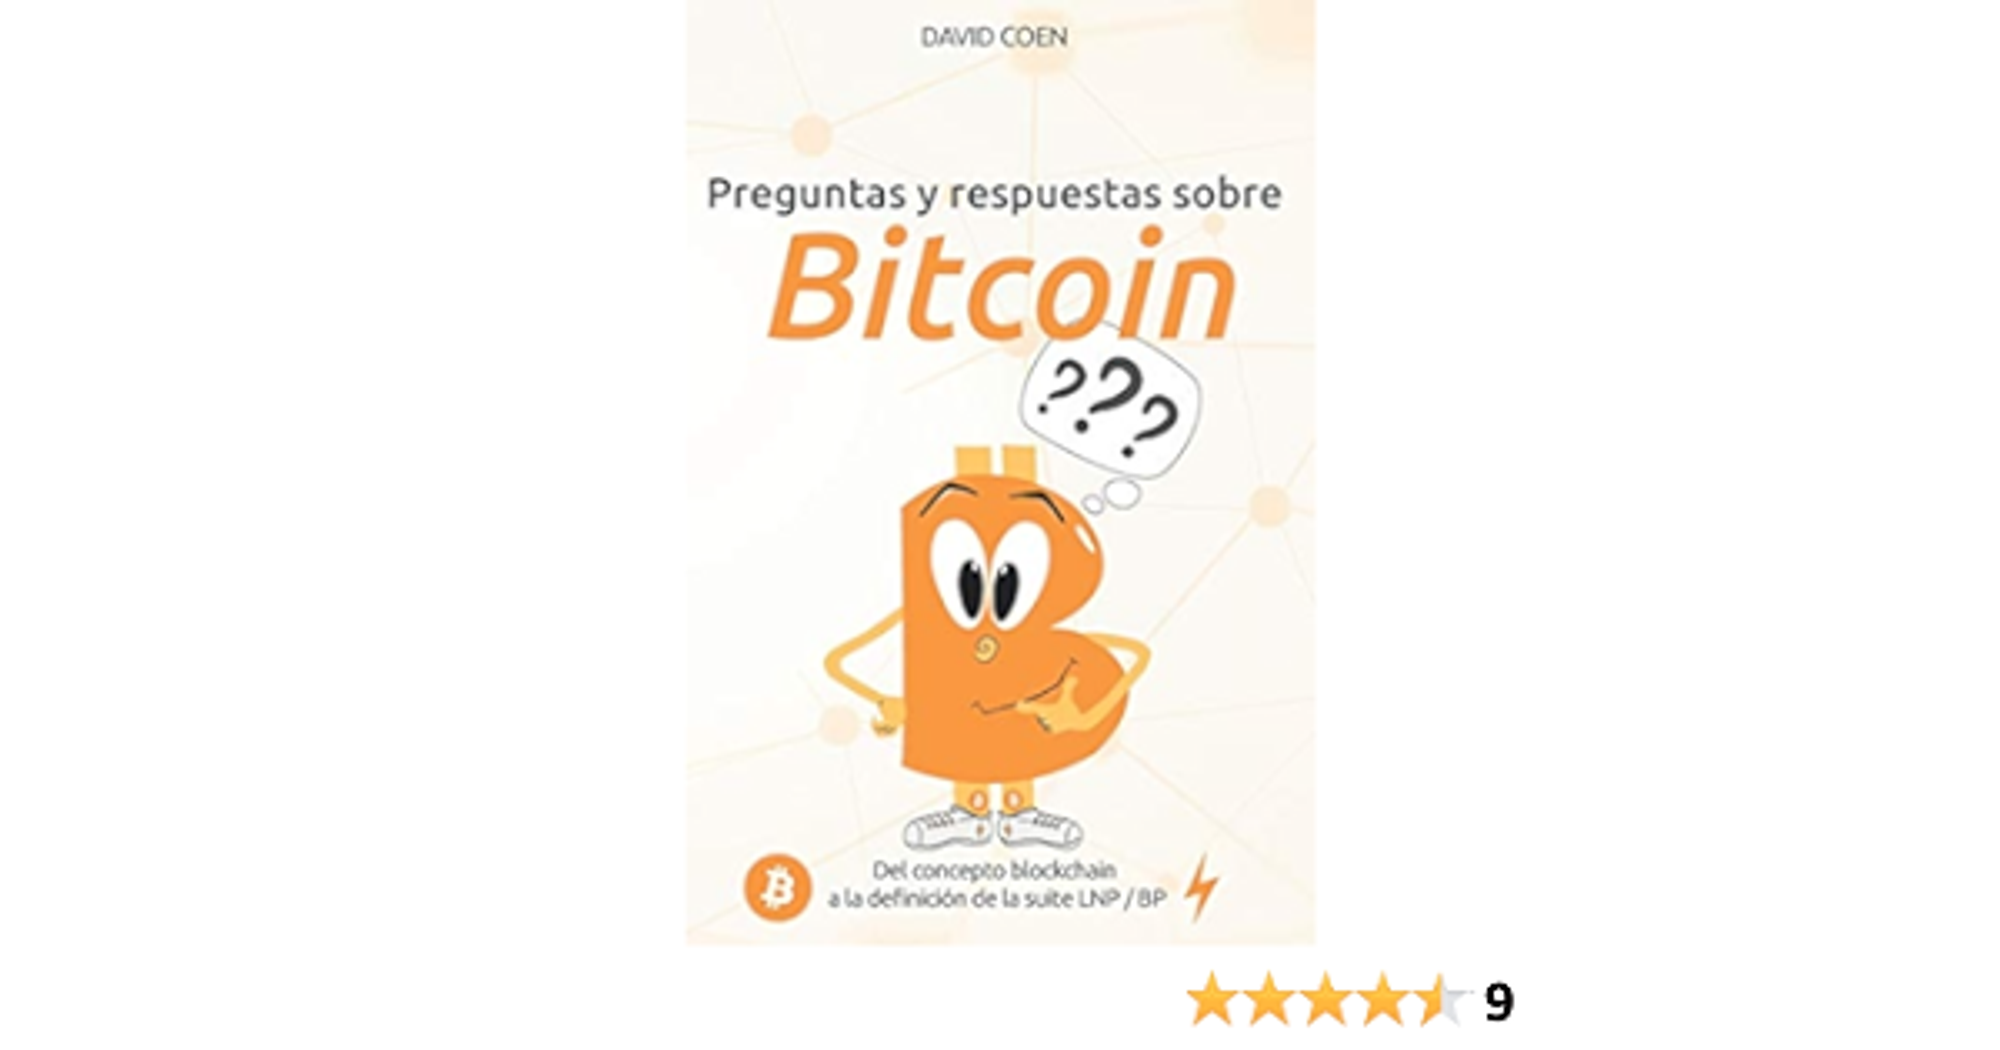 Preguntas y respuestas sobre Bitcoin: del concepto blockchain a la definición de la suite LNP / BP